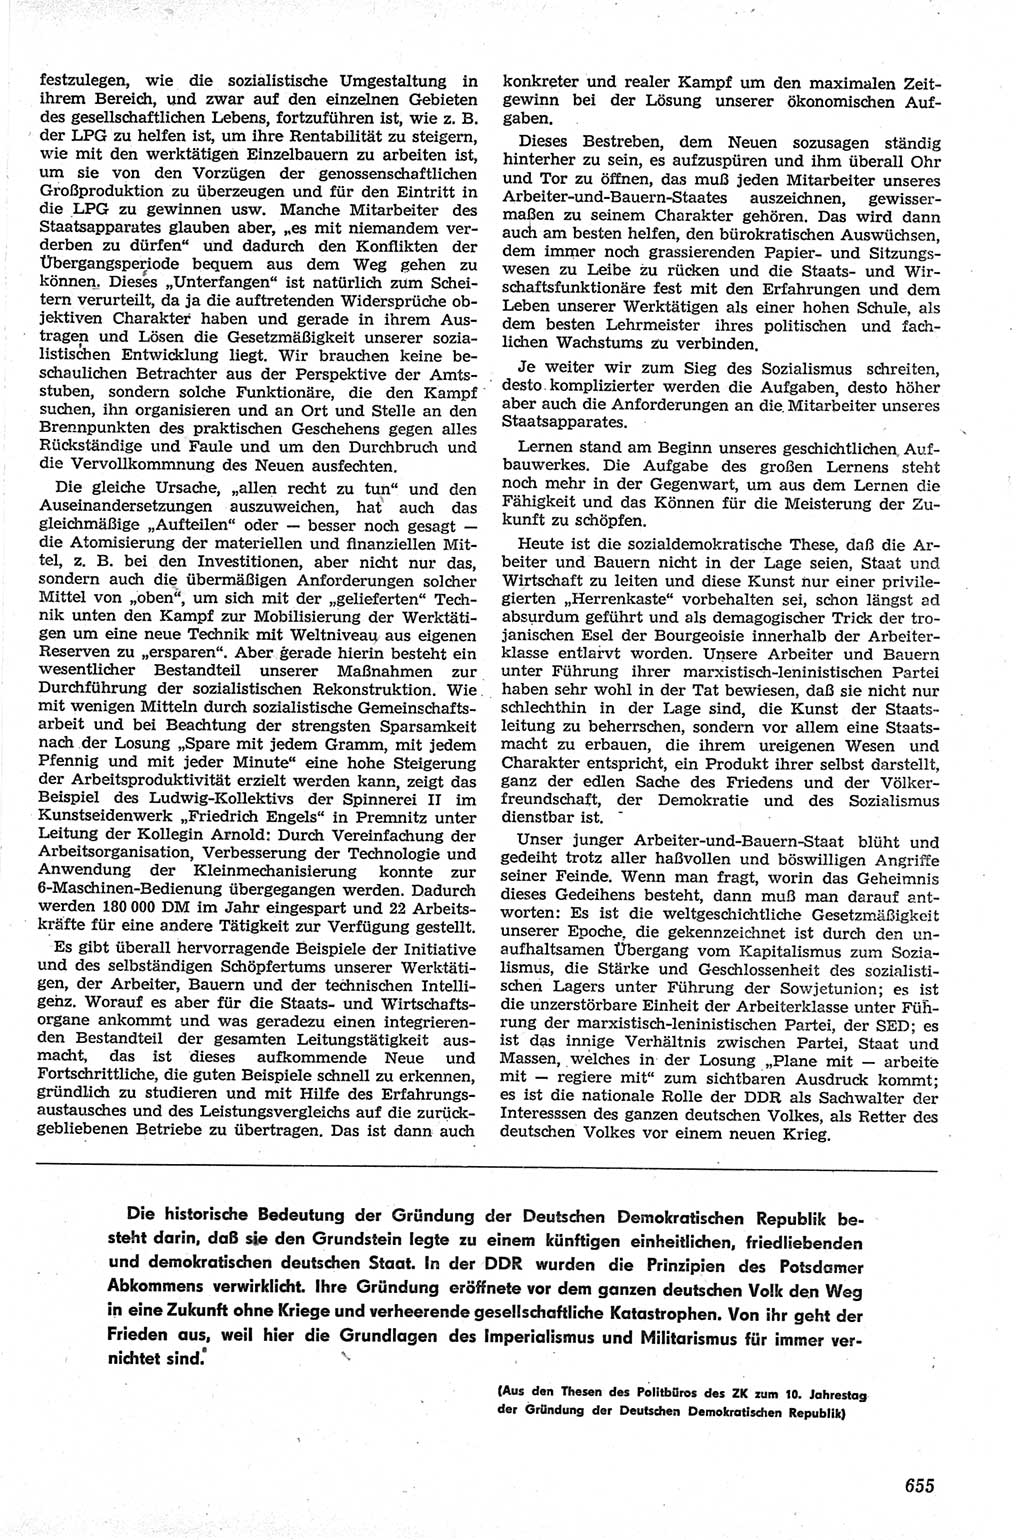 Neue Justiz (NJ), Zeitschrift für Recht und Rechtswissenschaft [Deutsche Demokratische Republik (DDR)], 13. Jahrgang 1959, Seite 655 (NJ DDR 1959, S. 655)